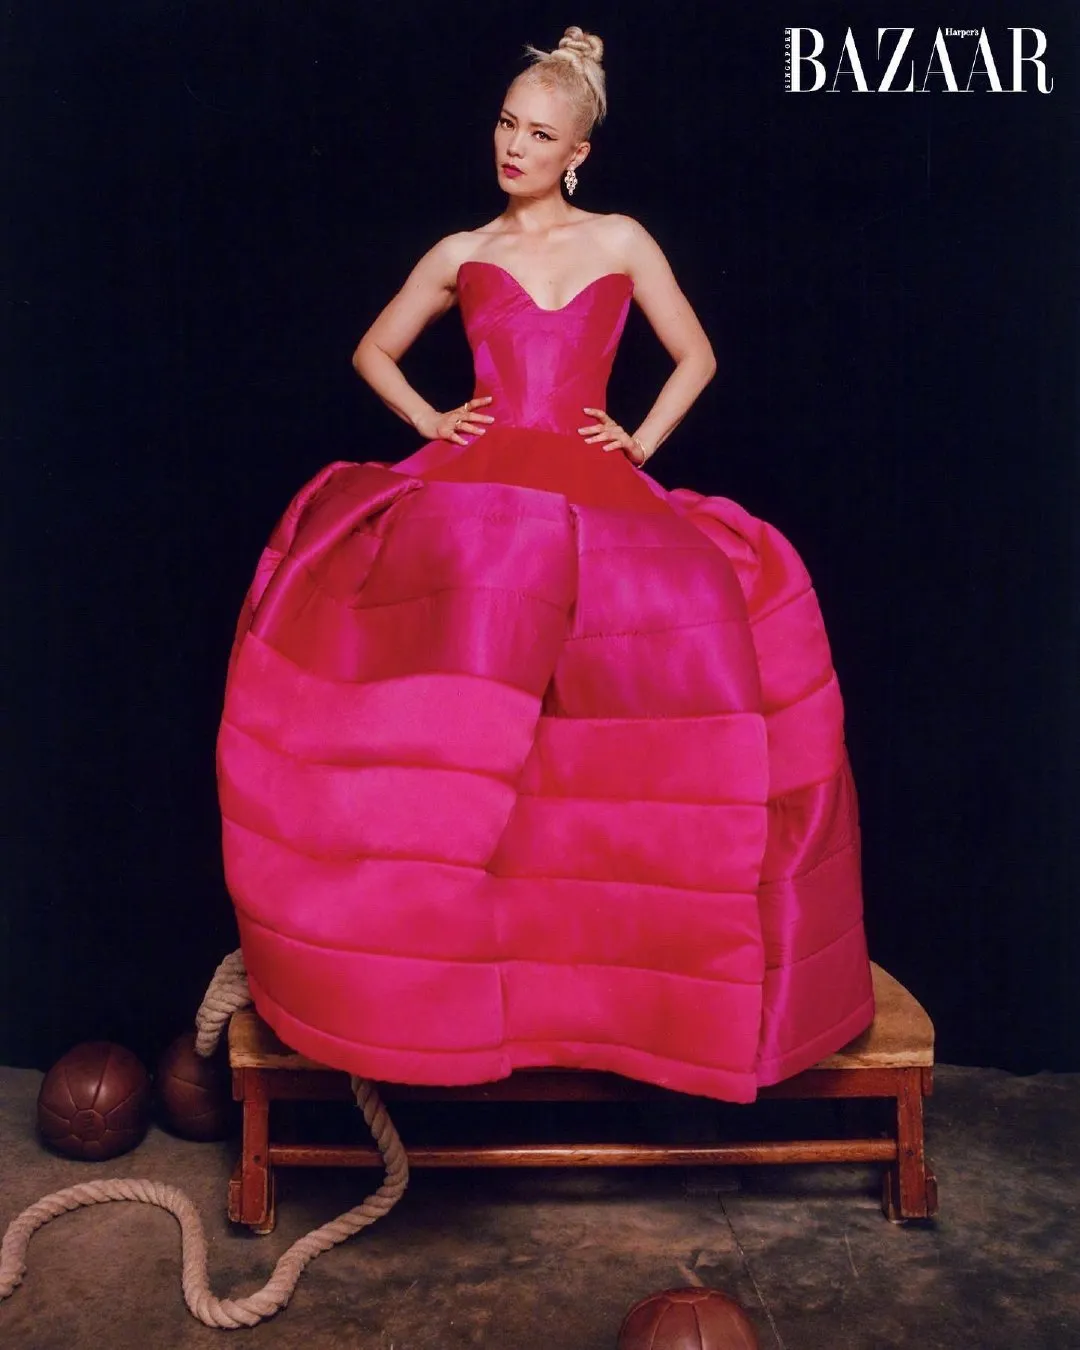 Pom Klementieff, "Harper's Bazaar" magazine Singapore edition new photo shoot | FMV6